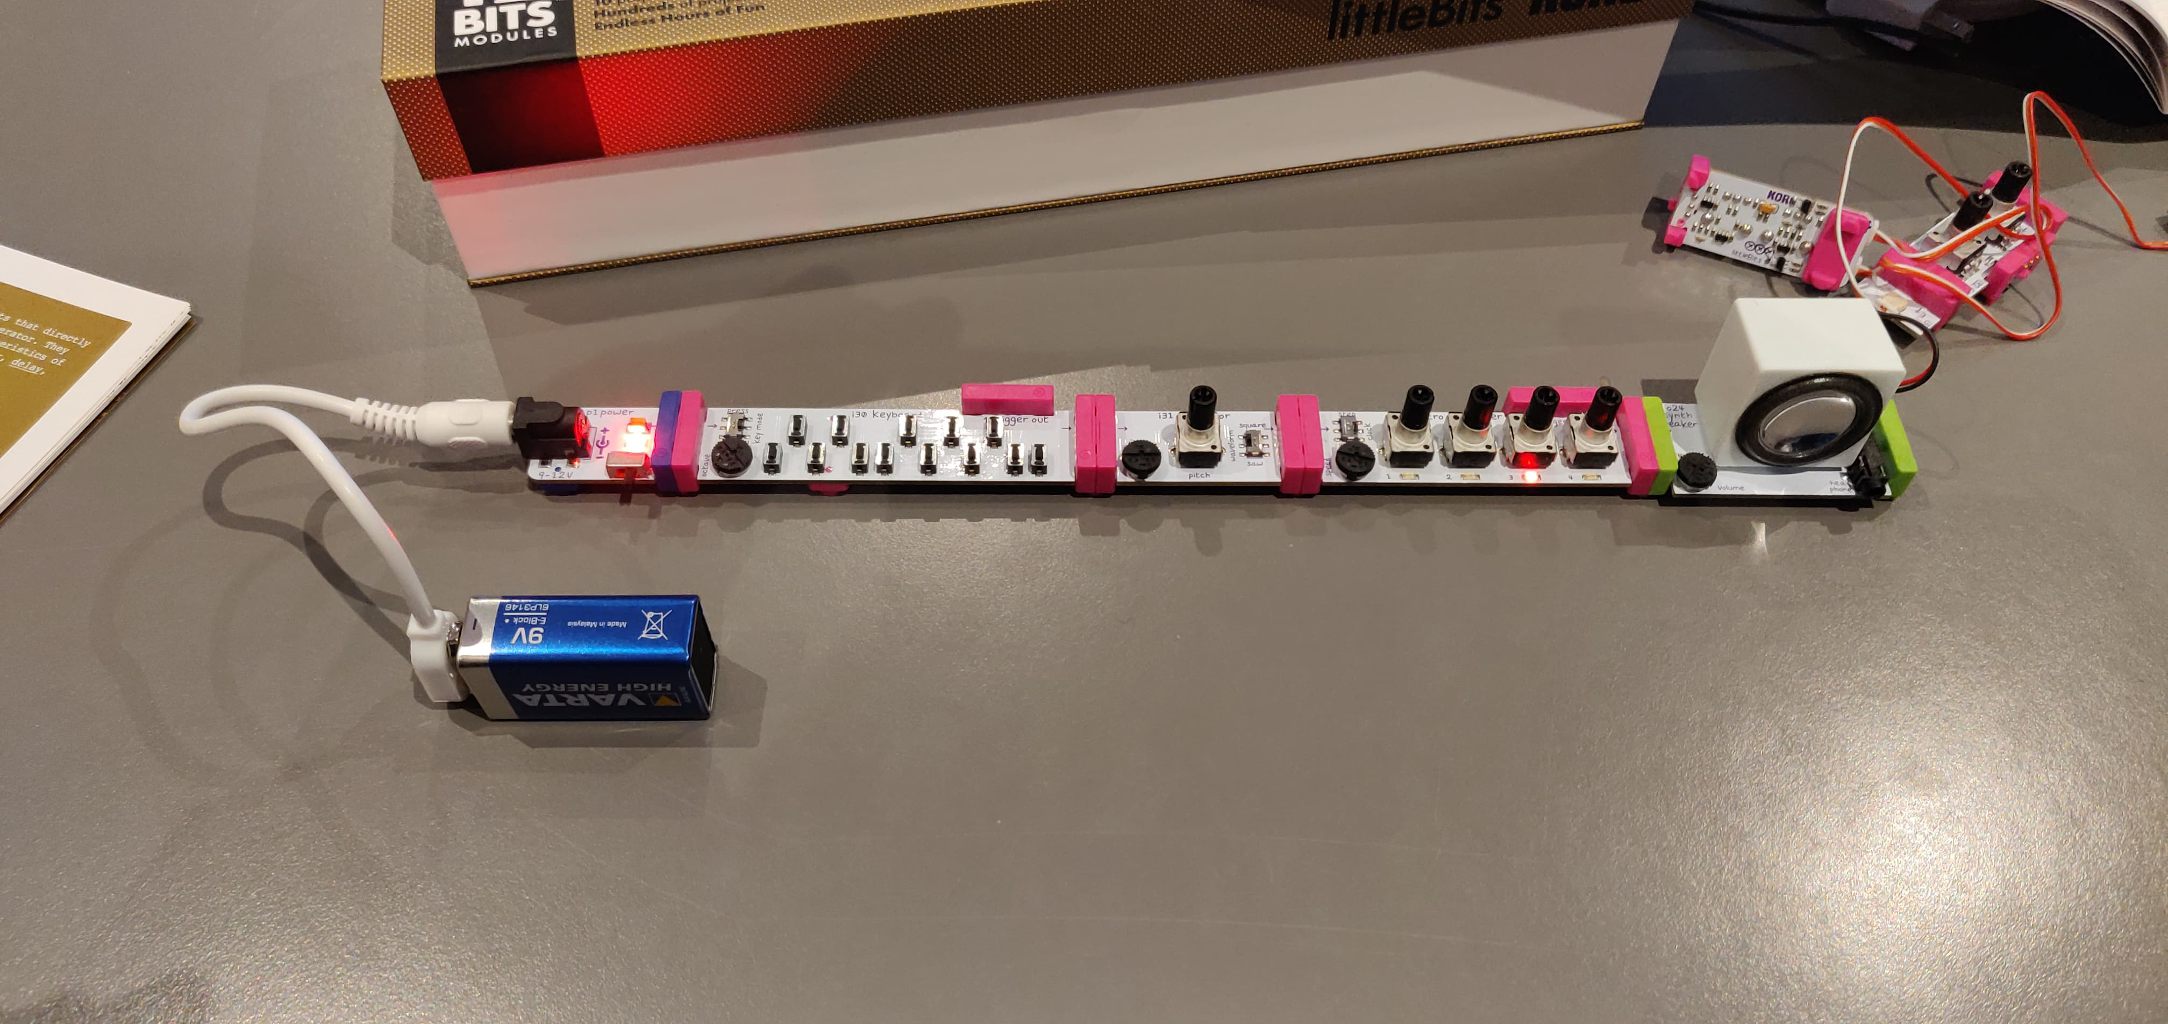 LittleBits instrument